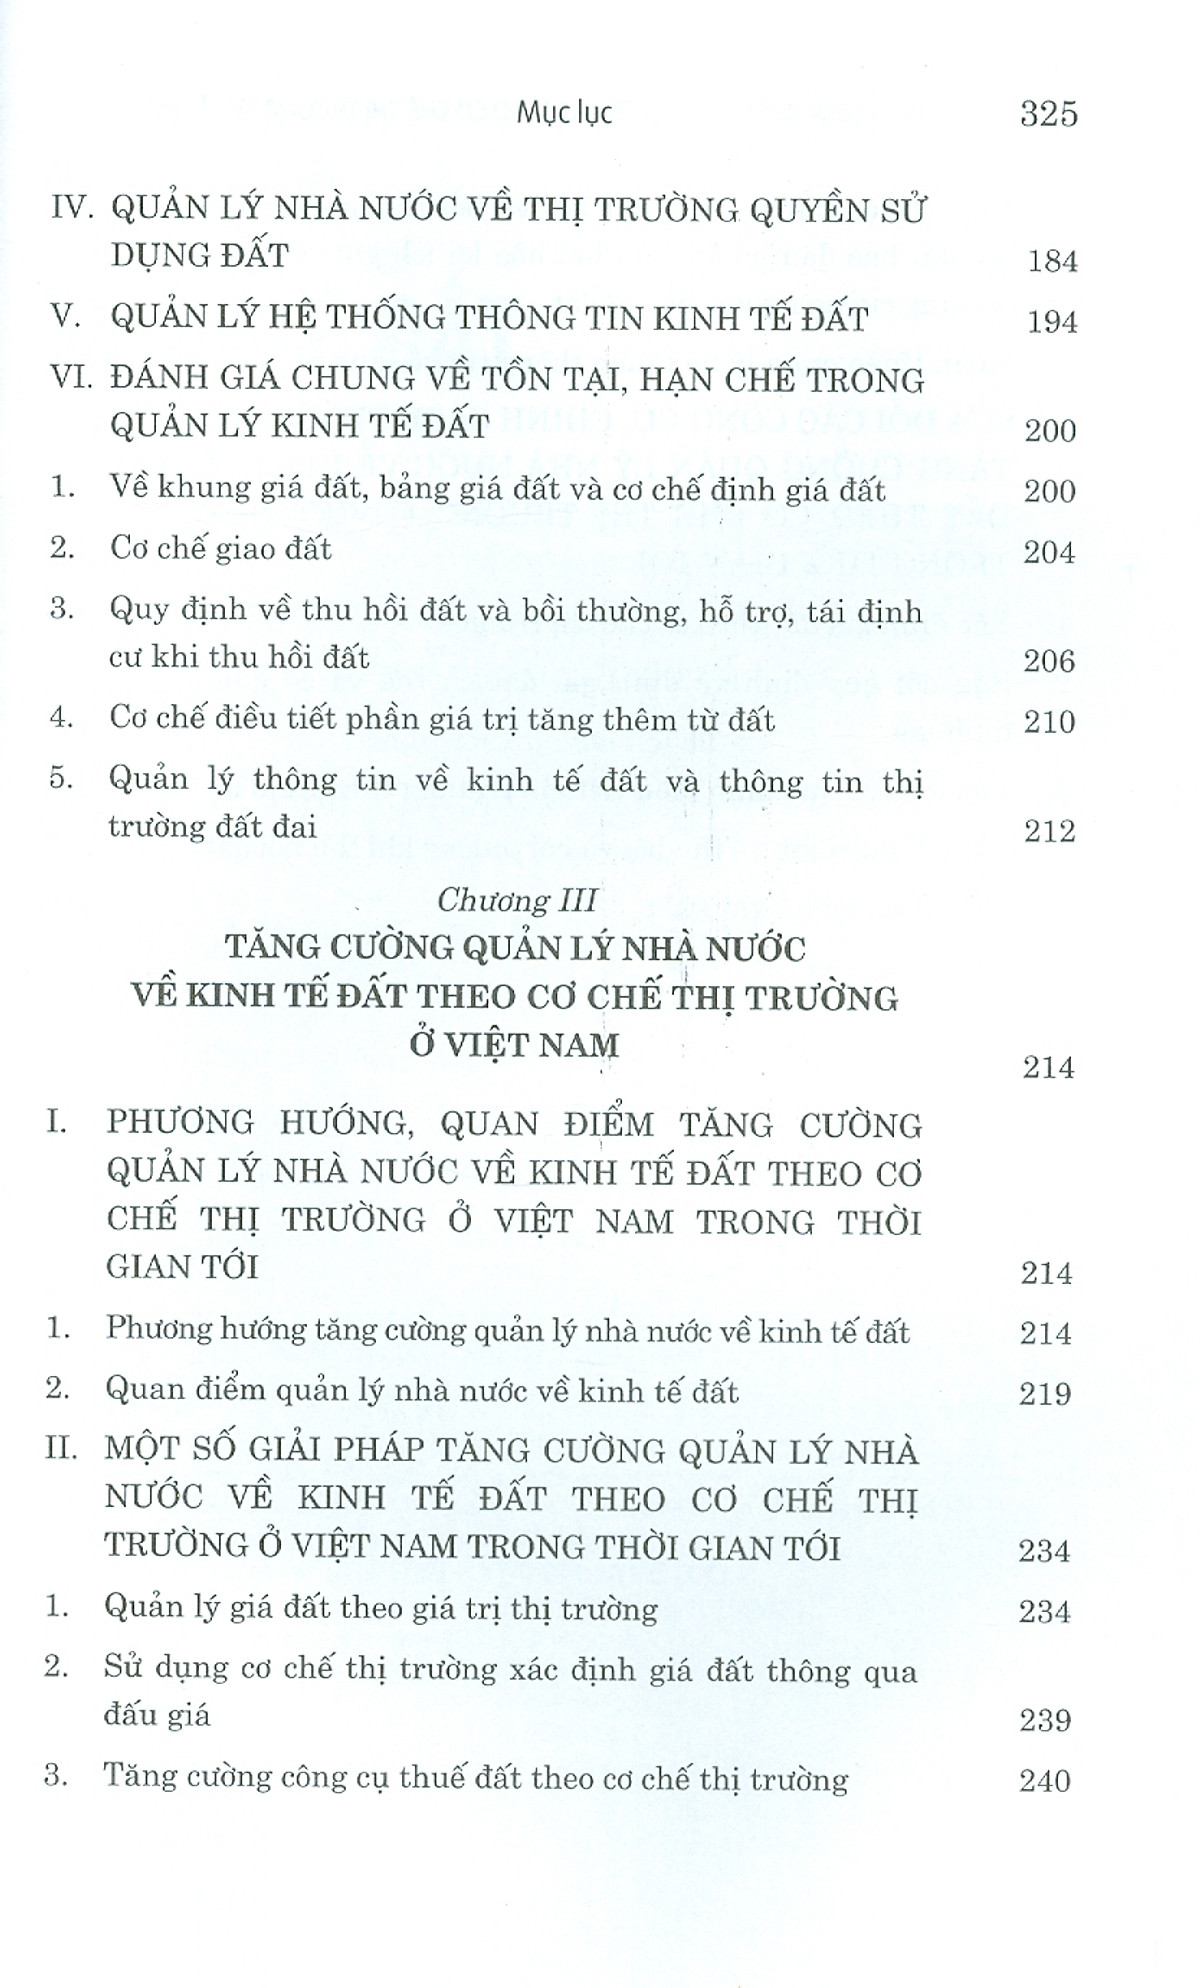 Quản Lý Nhà Nước Về Kinh Tế Đất Theo Cơ Chế Thị Trường Ở Việt Nam Sách Chuyên Khảo PDF